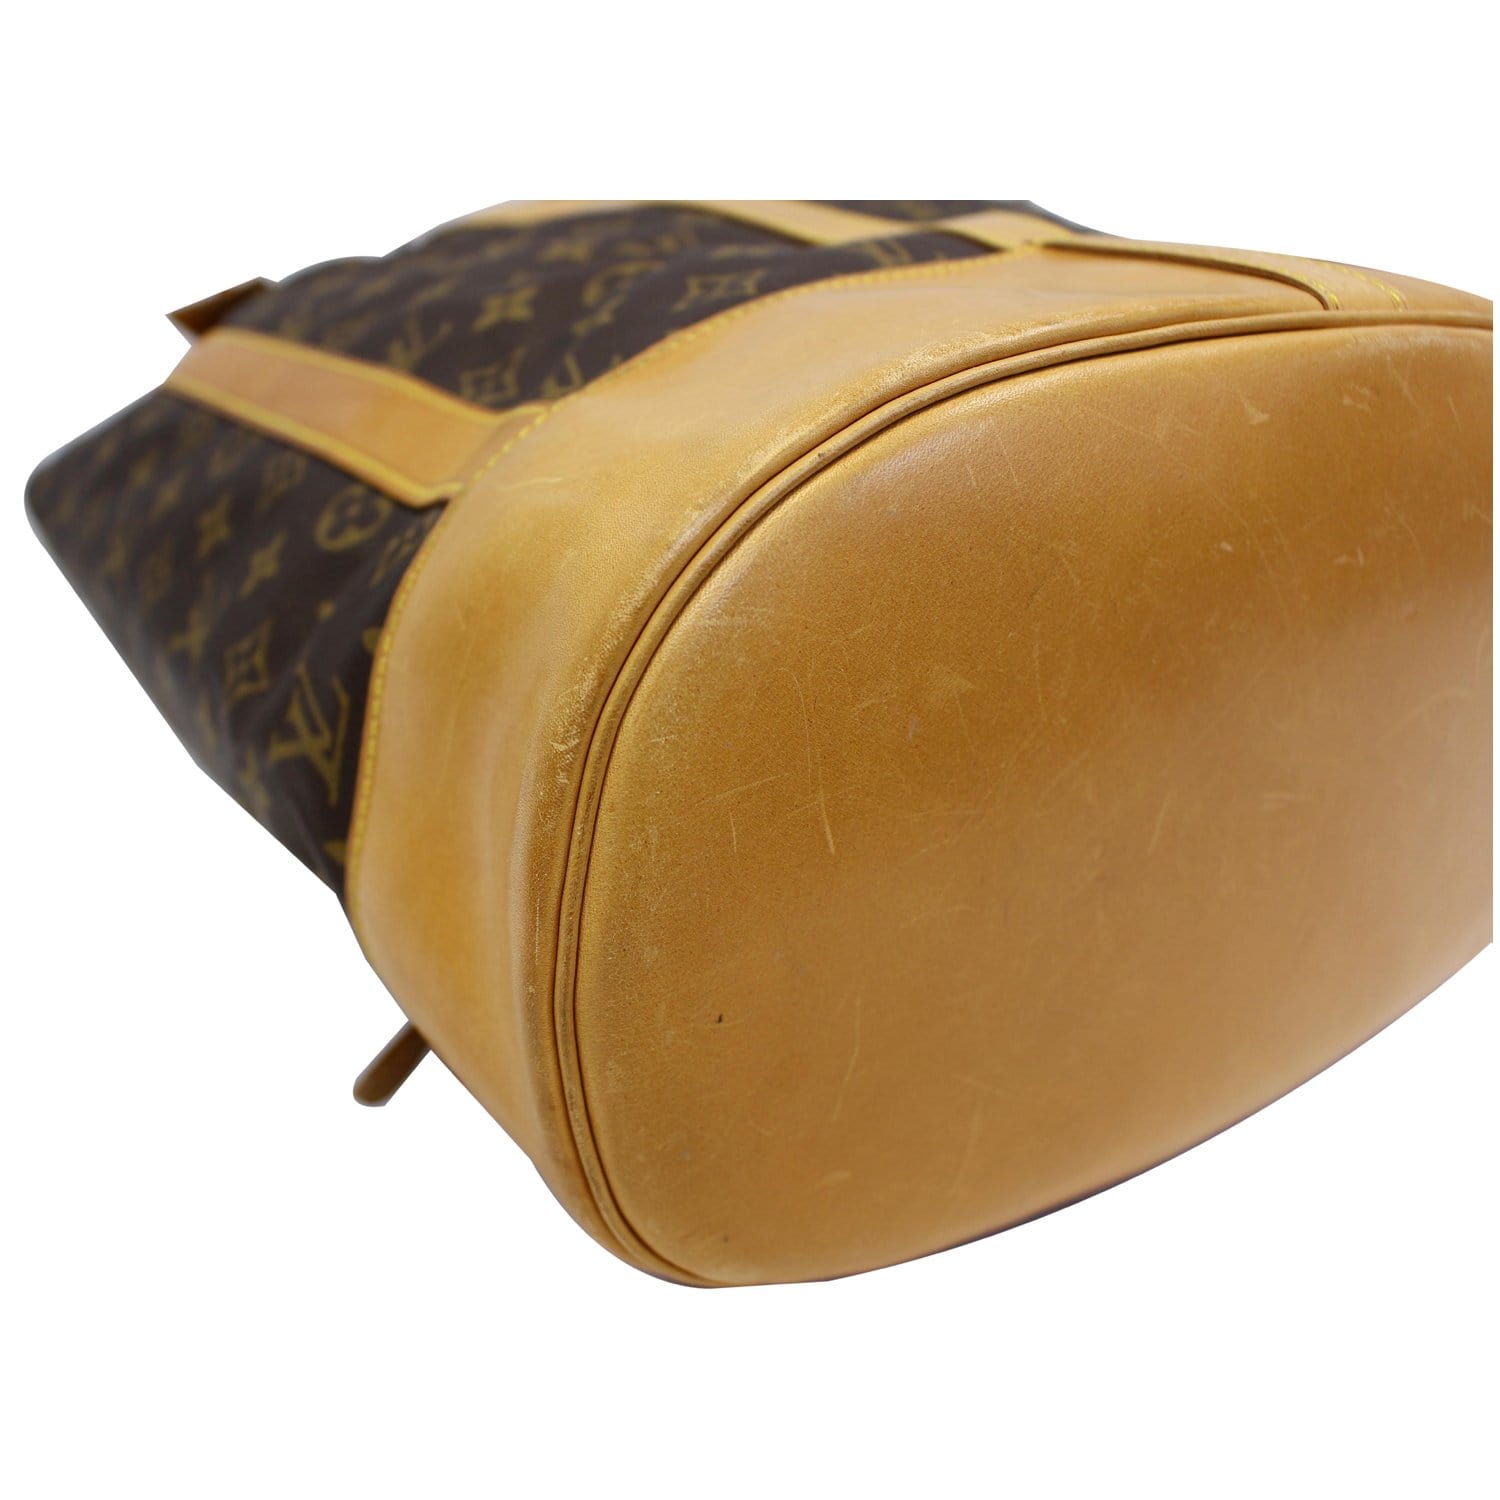 Louis Vuitton Monogram Randonnee GM Sling Backpack 44lk722s